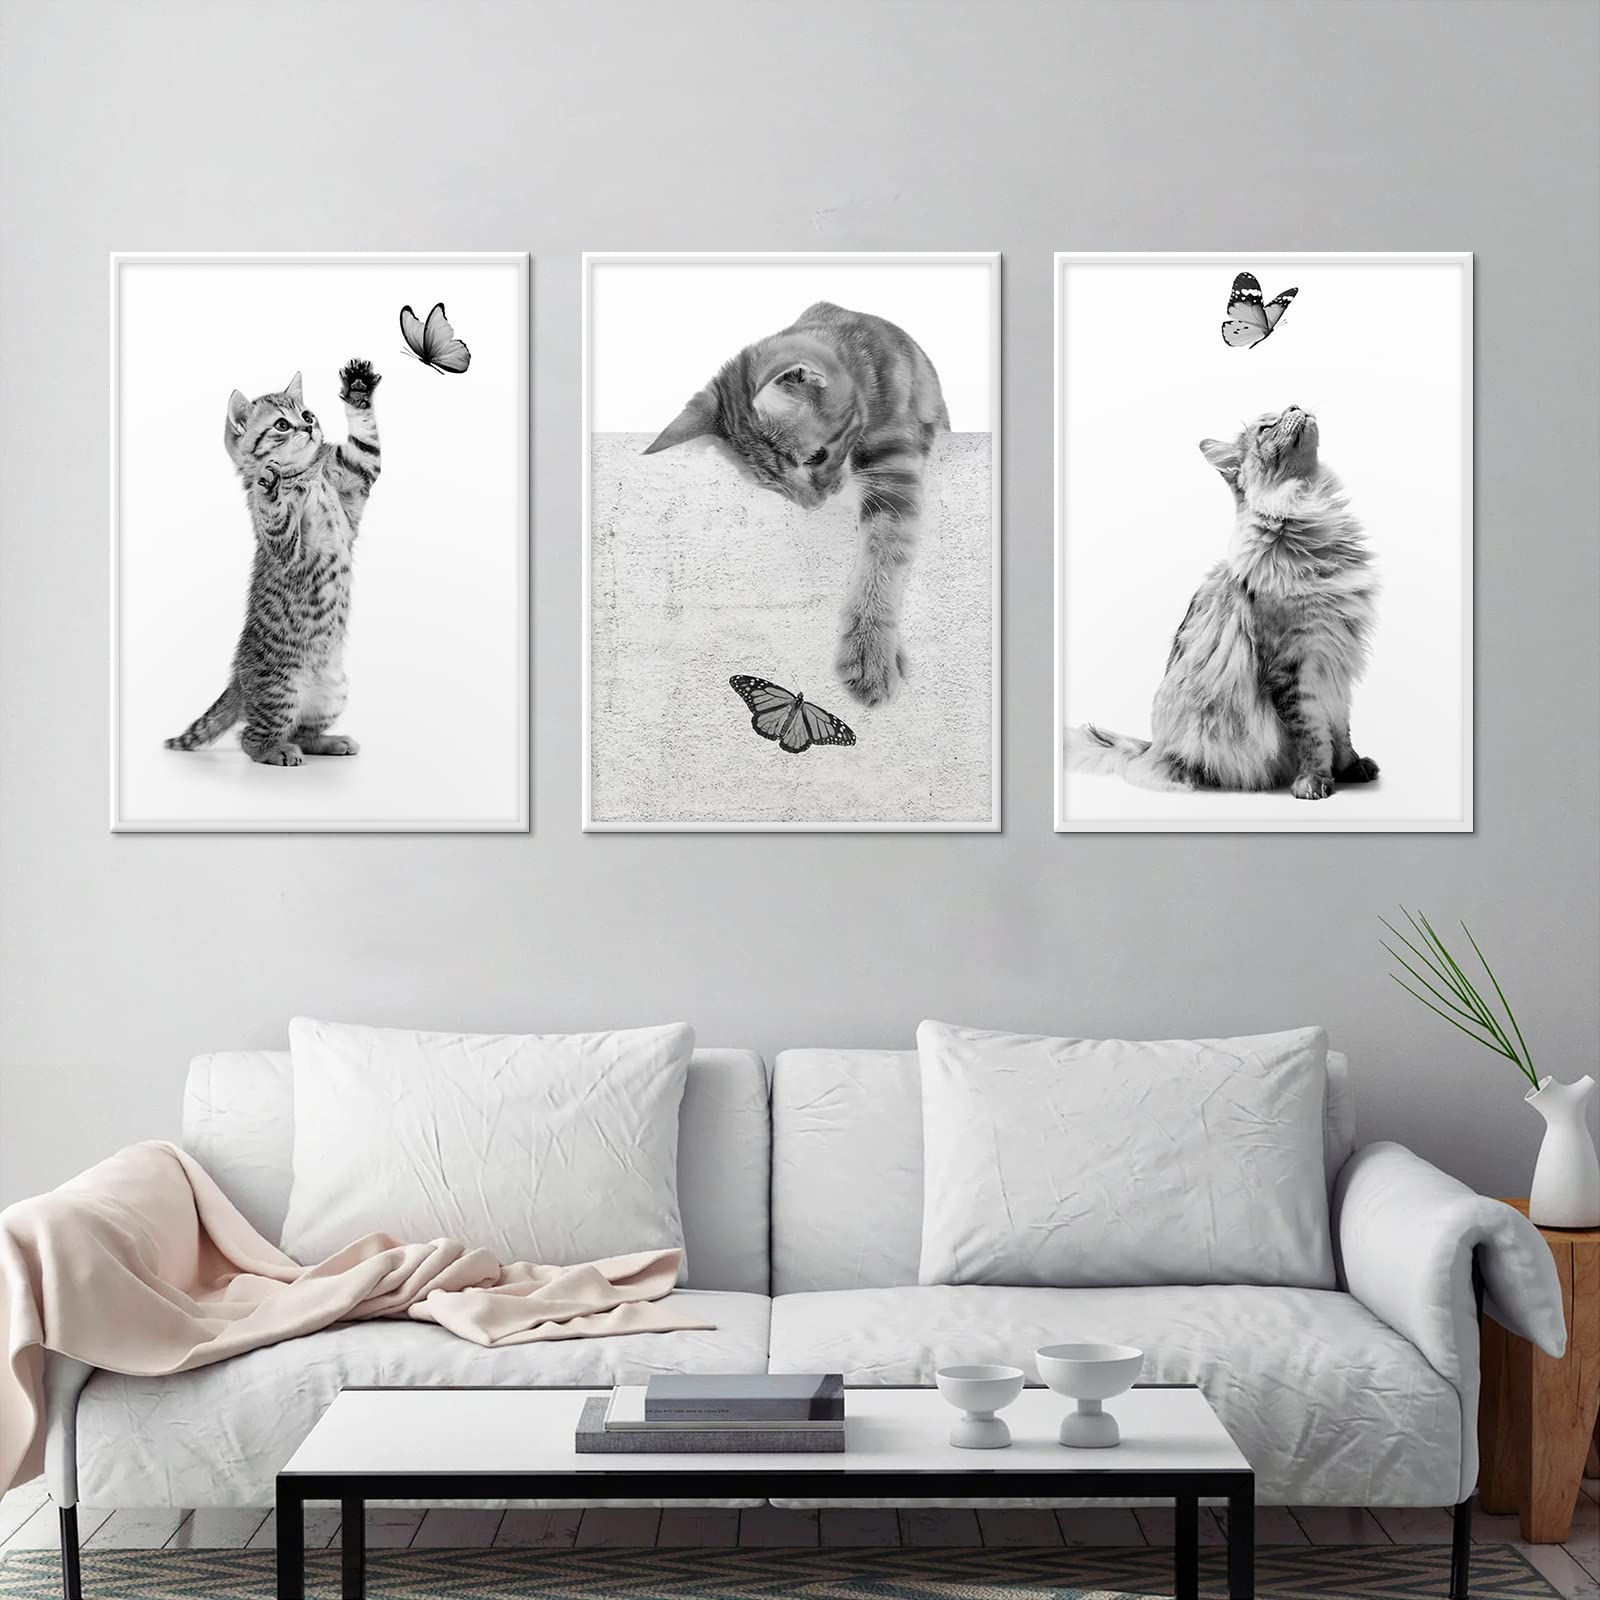 CULASIGN 3er Premium Poster Set, Schwarz Weiß Katzen Bilder Moderne Wandbilder, Schwarz-Weiß Leinwand Bild für Wohnzimmer Schlafzimmer Kinderzimmer Wanddeko Art ohne Rahmen (A,50x70cm)